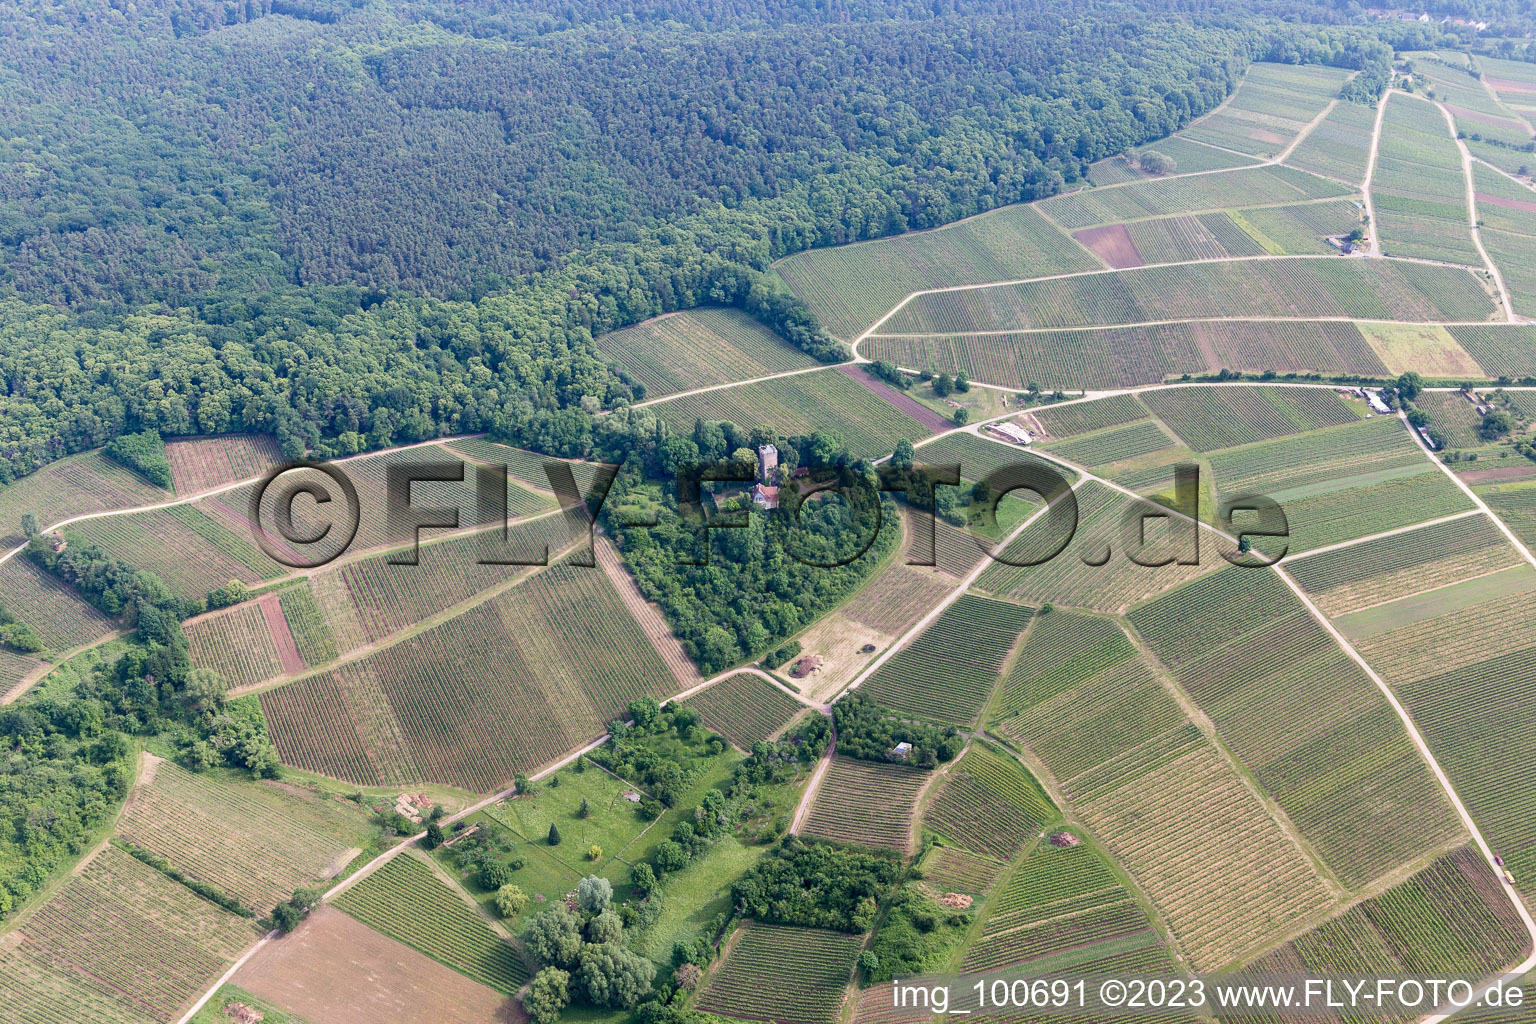 Aerial view of Sonnenberg in the district Schweigen in Schweigen-Rechtenbach in the state Rhineland-Palatinate, Germany